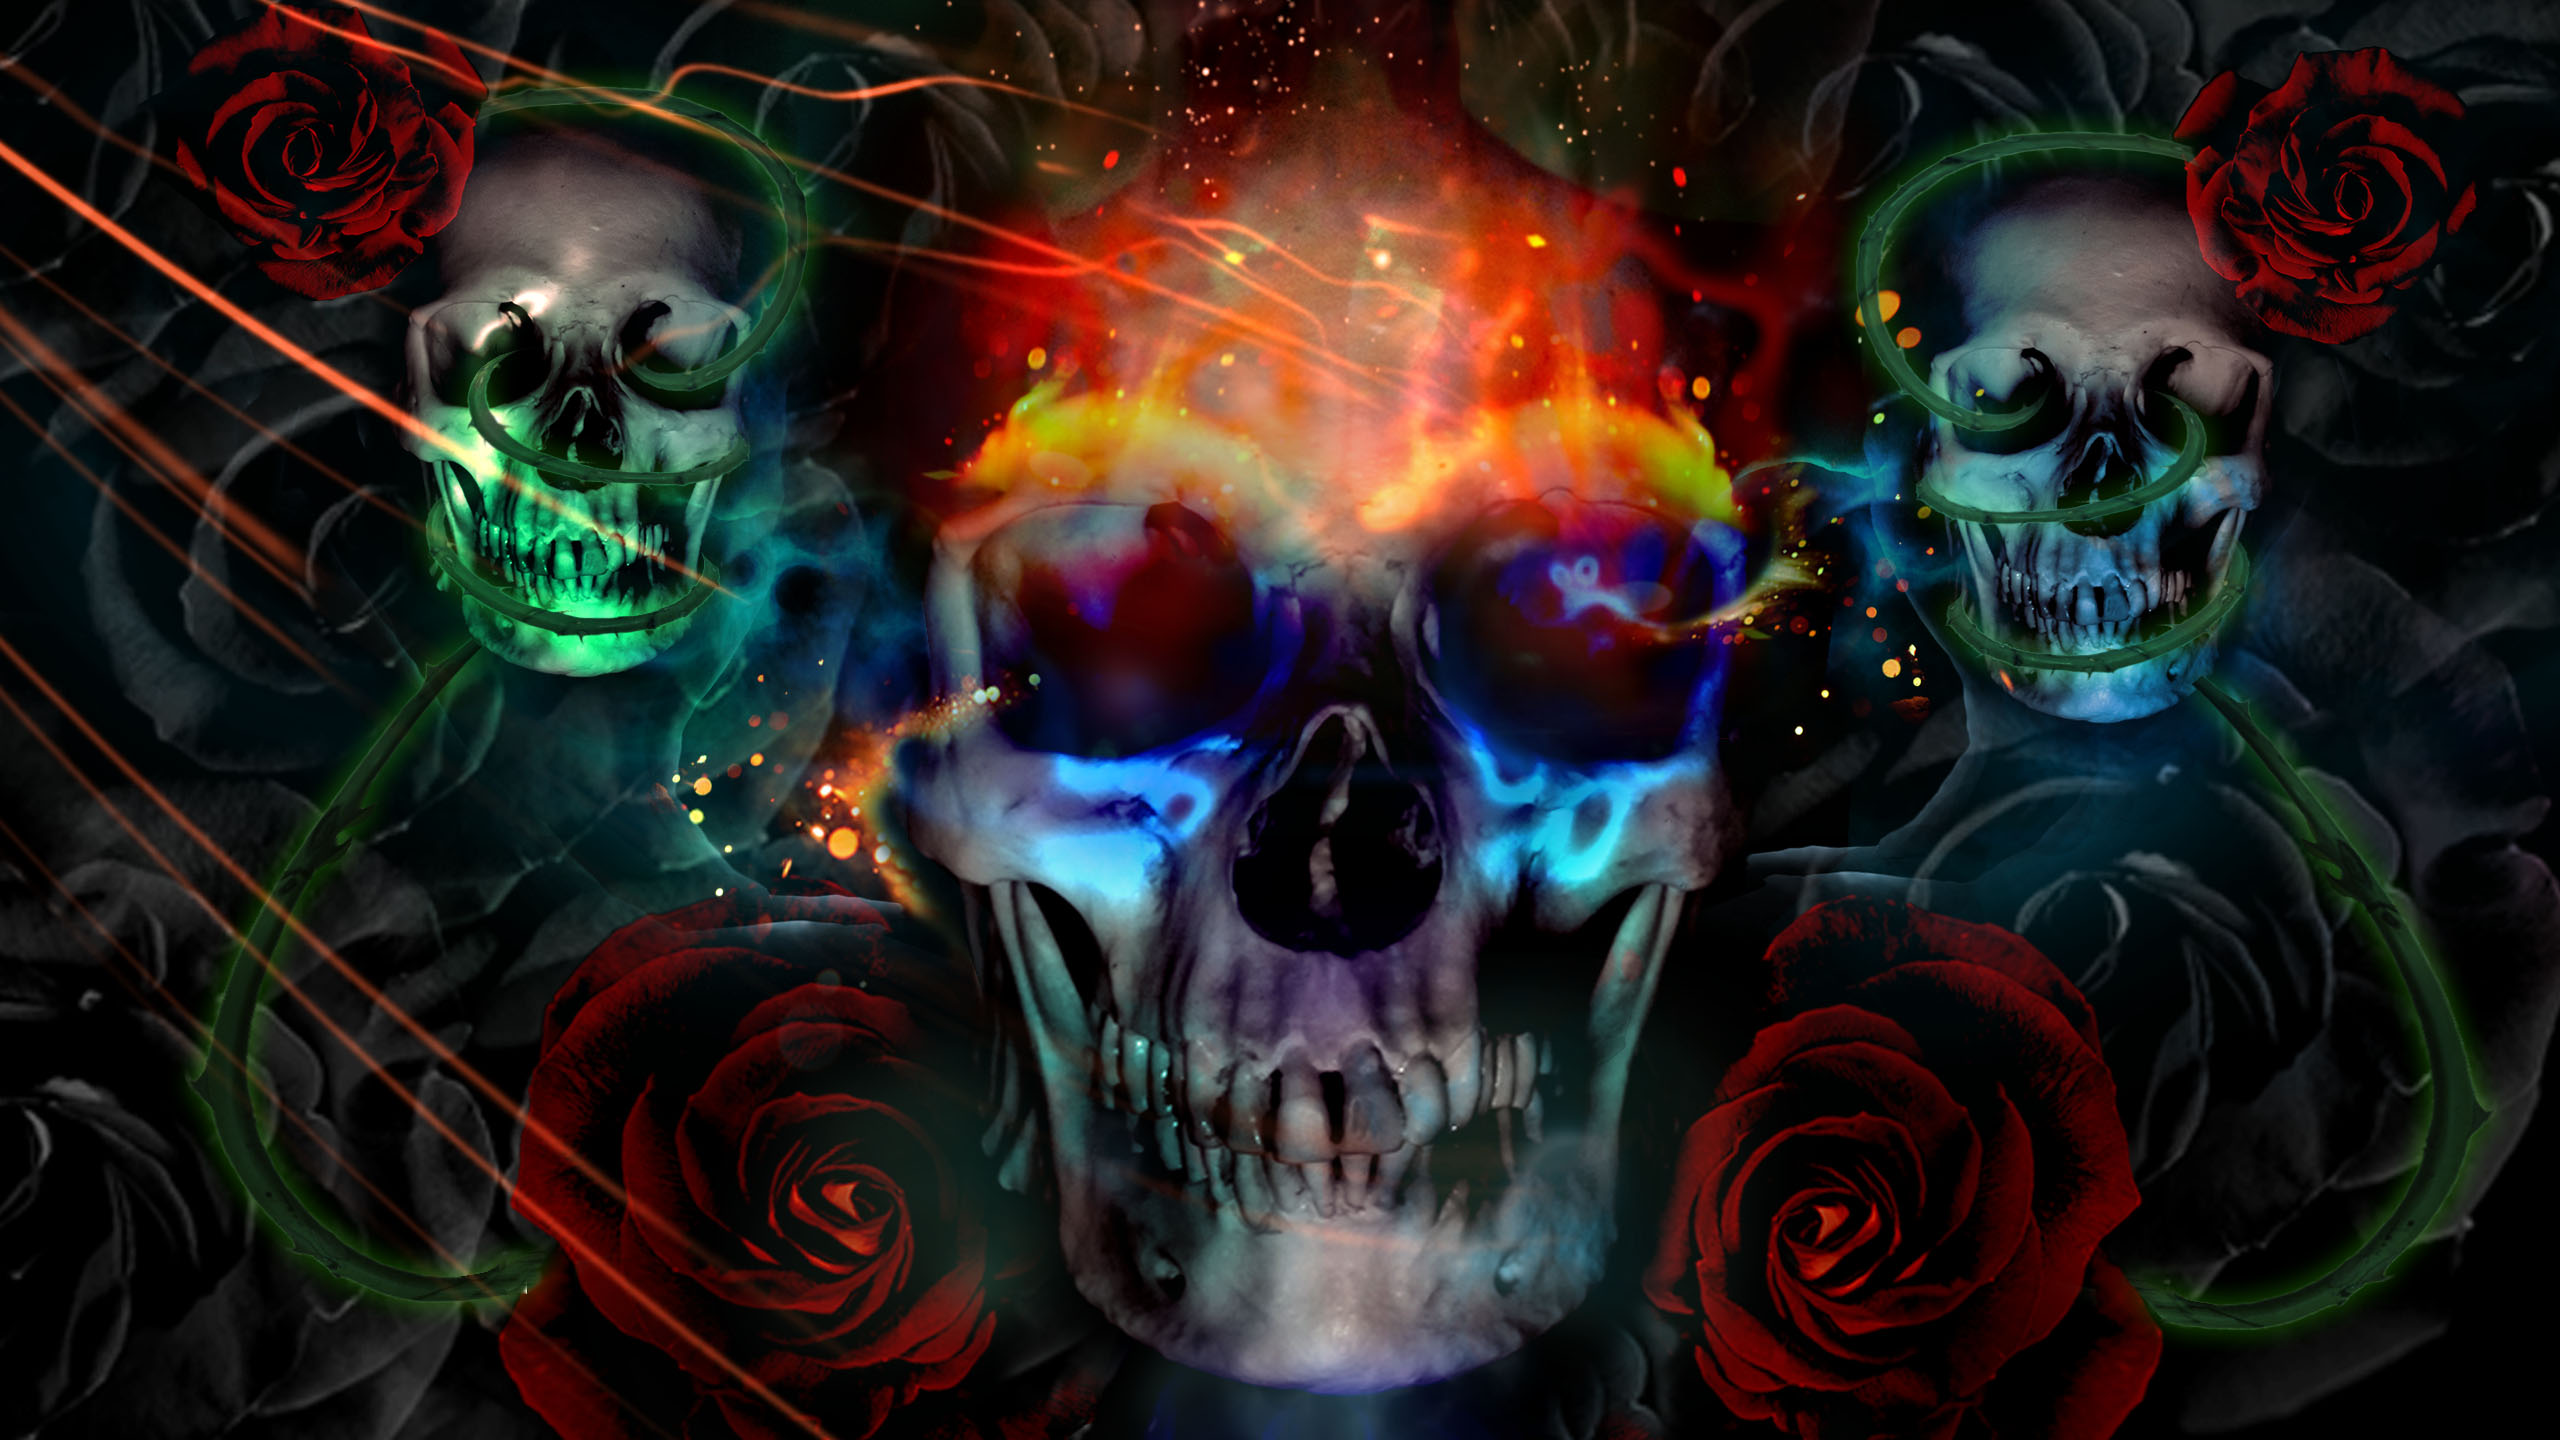 Free download skulls desktop background wallpaper skulls desktop background  hd [2560x1440] for your Desktop, Mobile & Tablet | Explore 75+ Skull  Background | Skull Wallpaper, Evil Skull Wallpaper, Skull Wallpaper  1920x1080